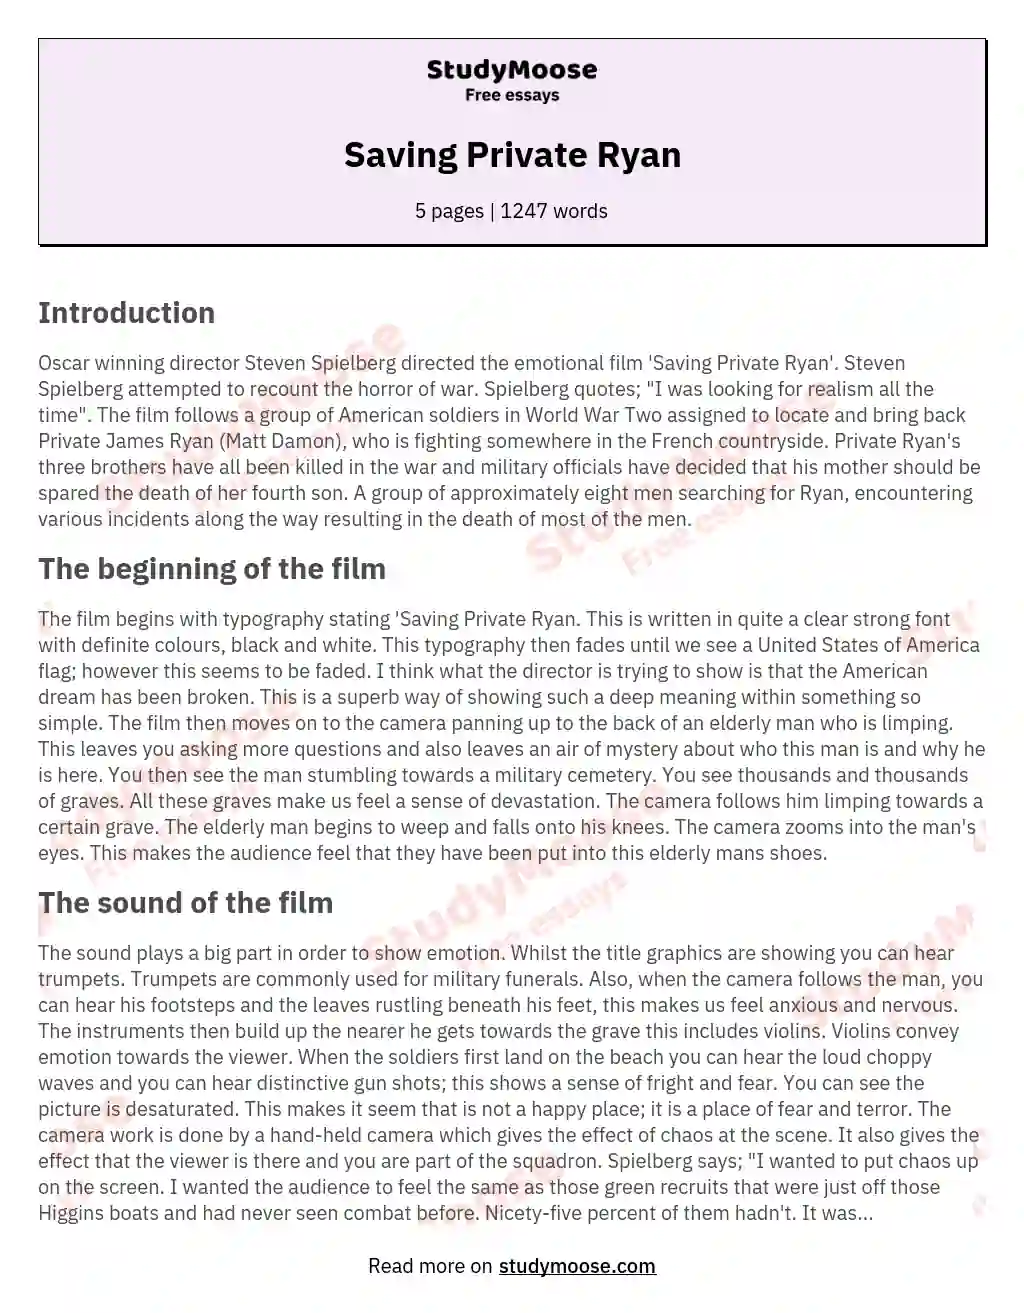 saving private ryan summary